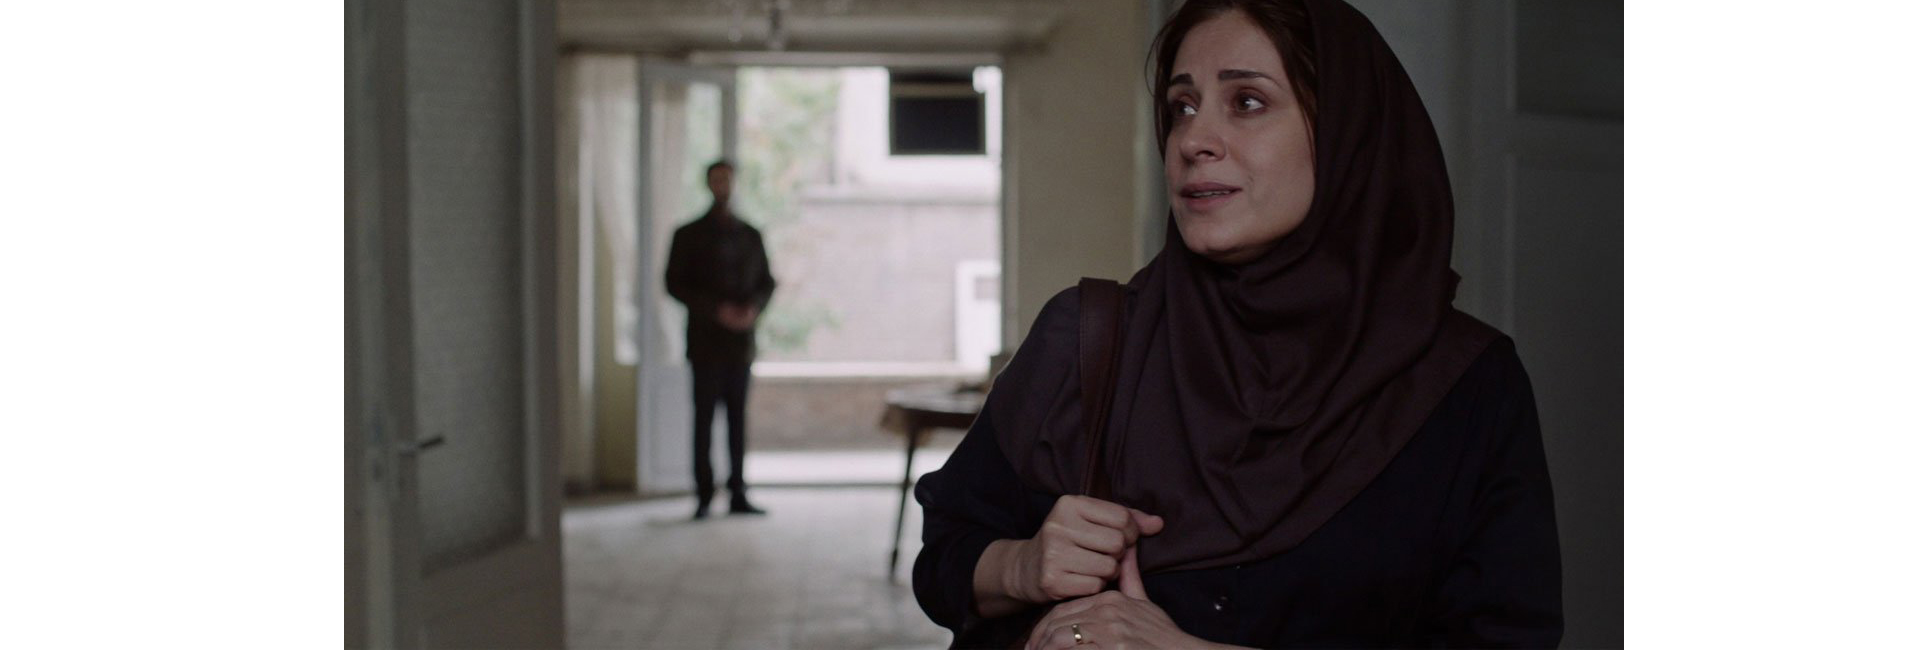 (Português) O PERDÃO, um filme de Maryam Moghadam e Behtash Sanaeeha